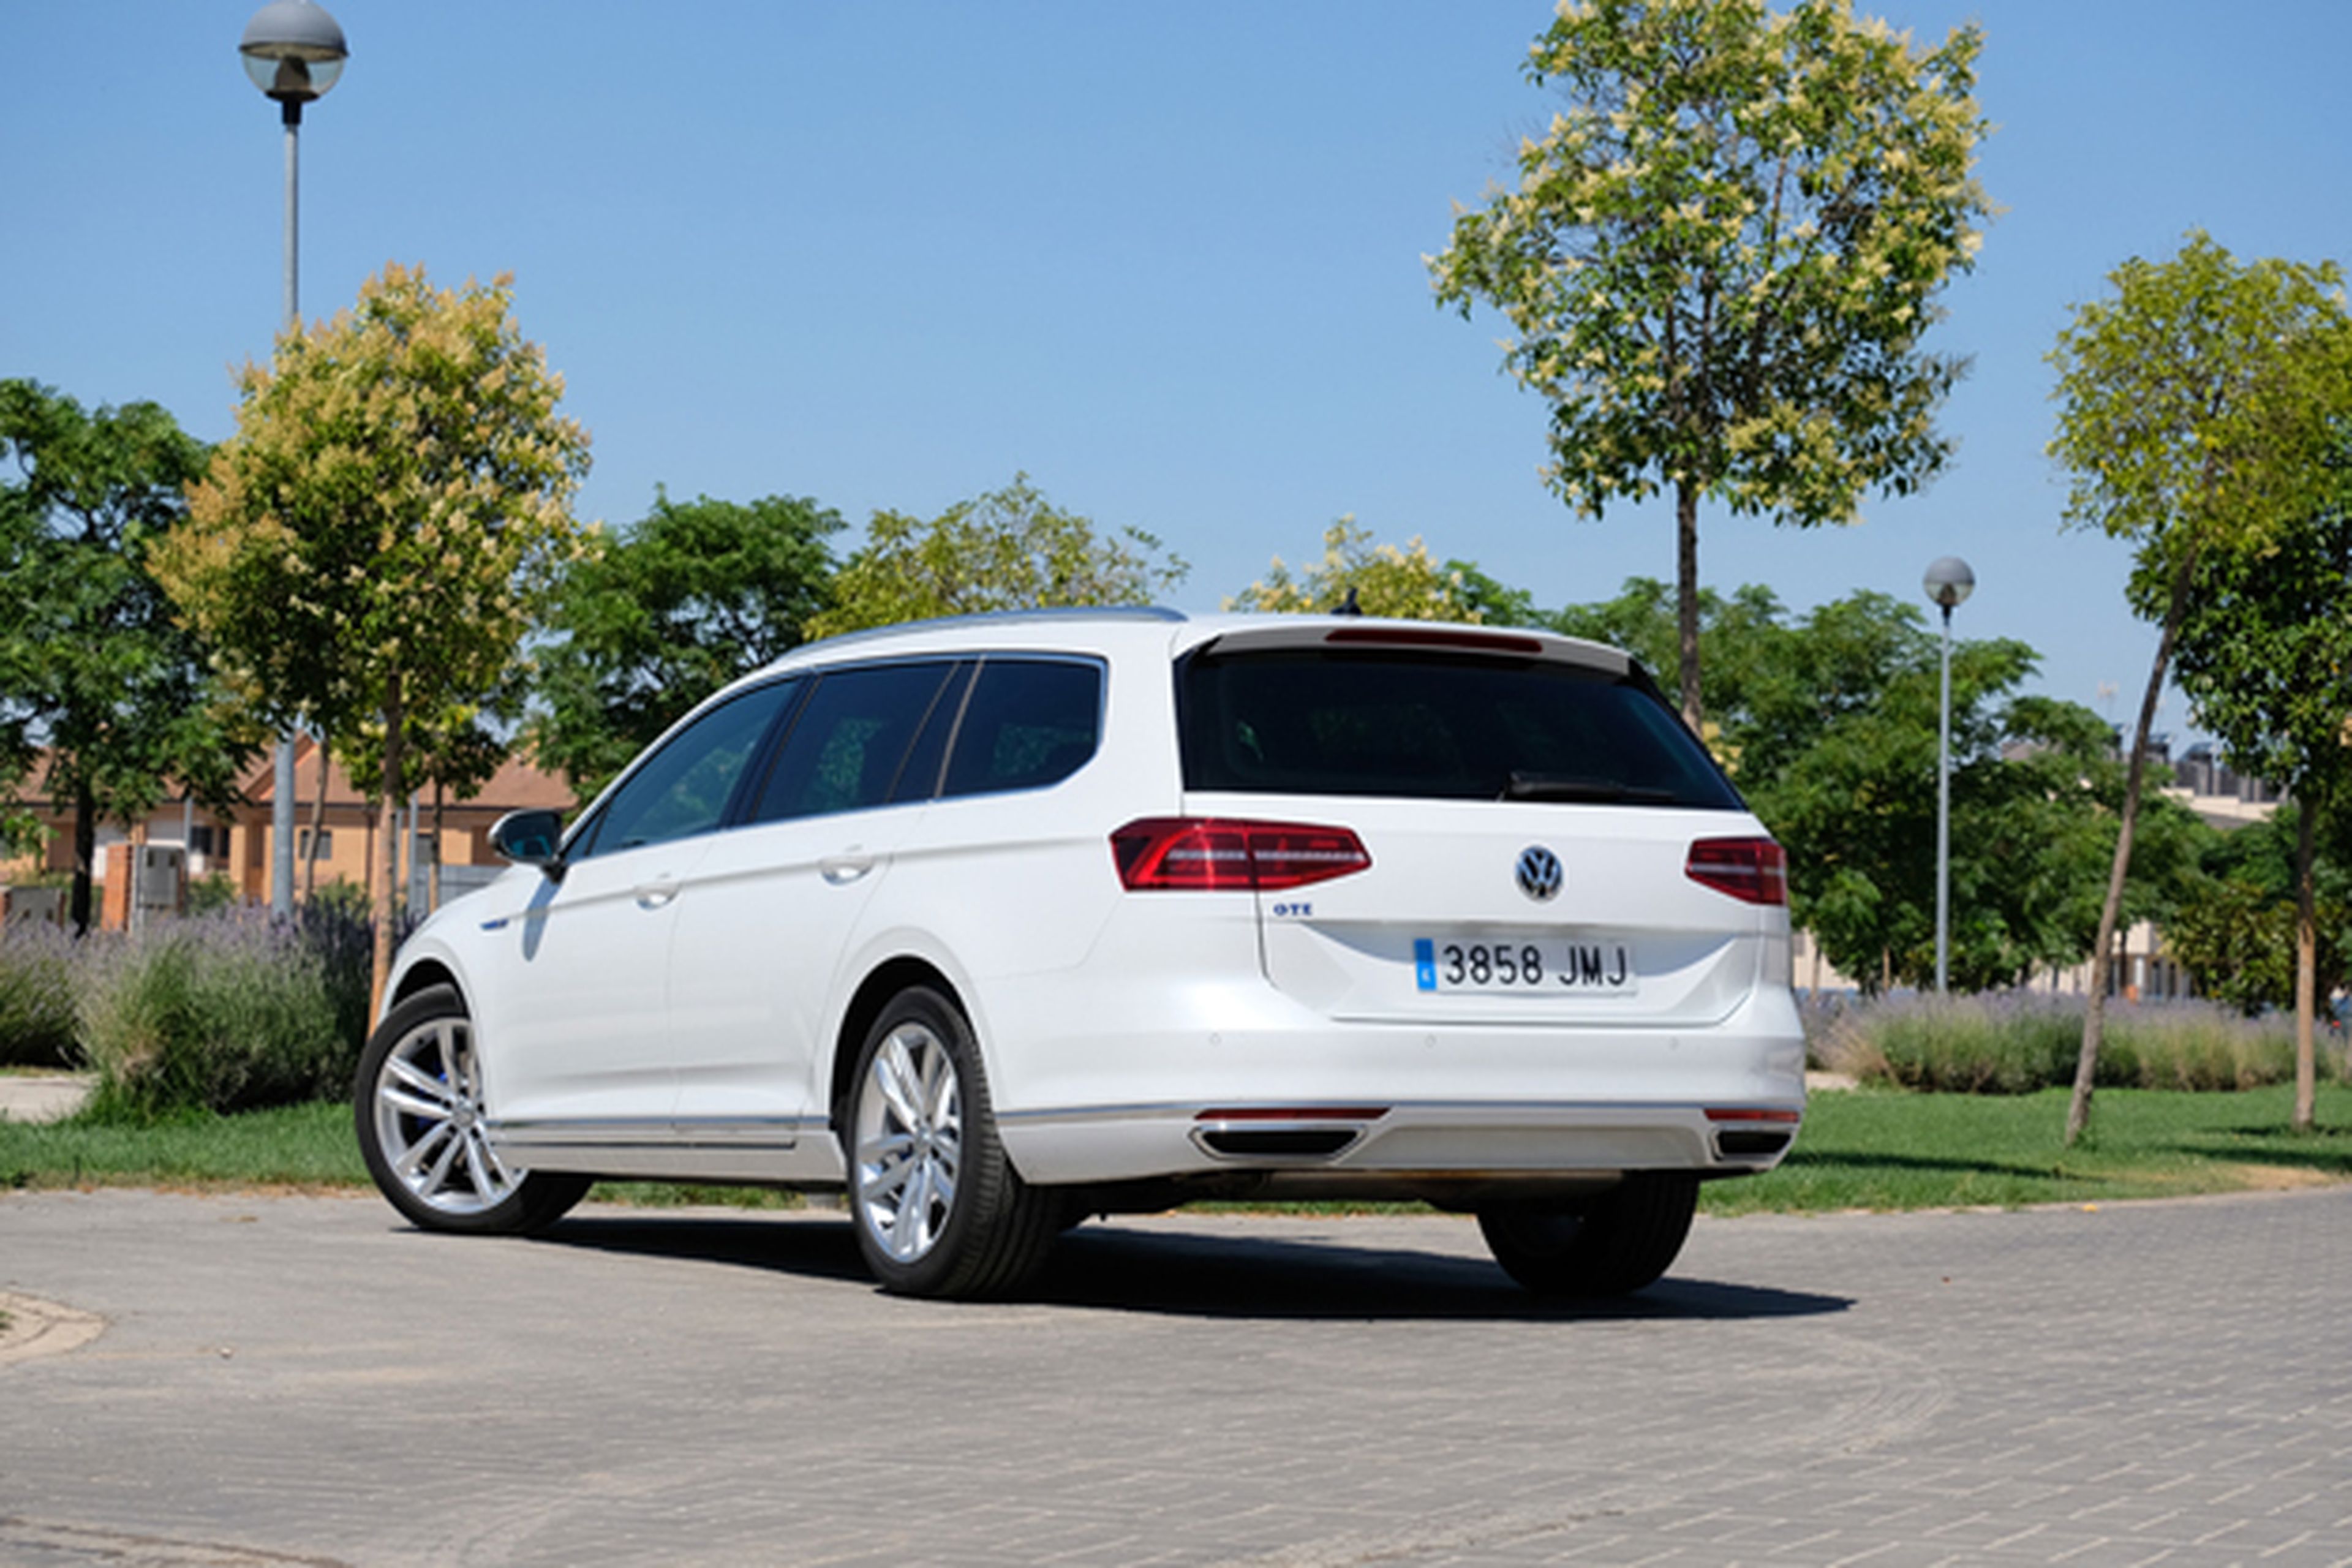 Volkswagen Passat GTE, conclusiones tras la prueba tecnológica